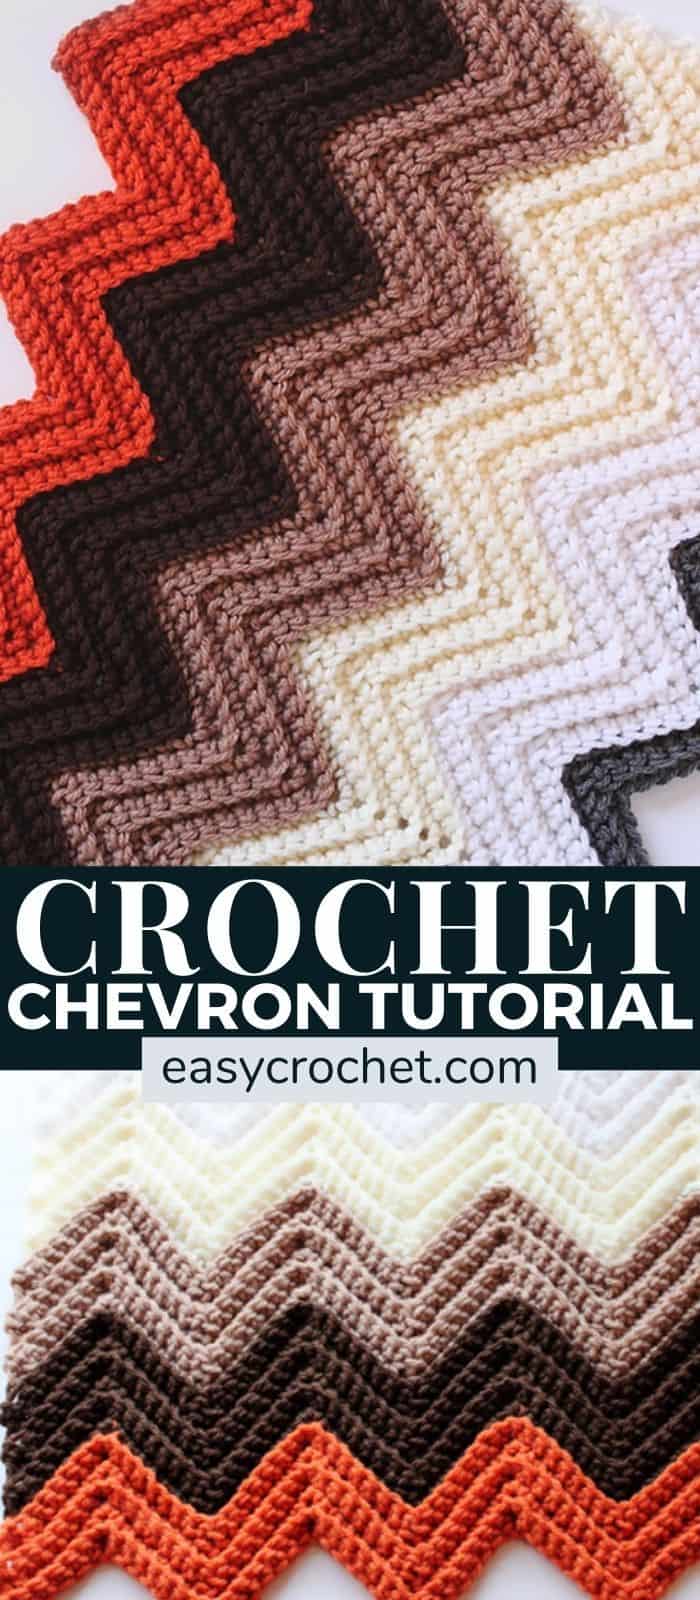 Free Chevron Crochet Blanket Pattern by Easy Crochet - Easy to make crochet chevron pattern! via @easycrochetcom